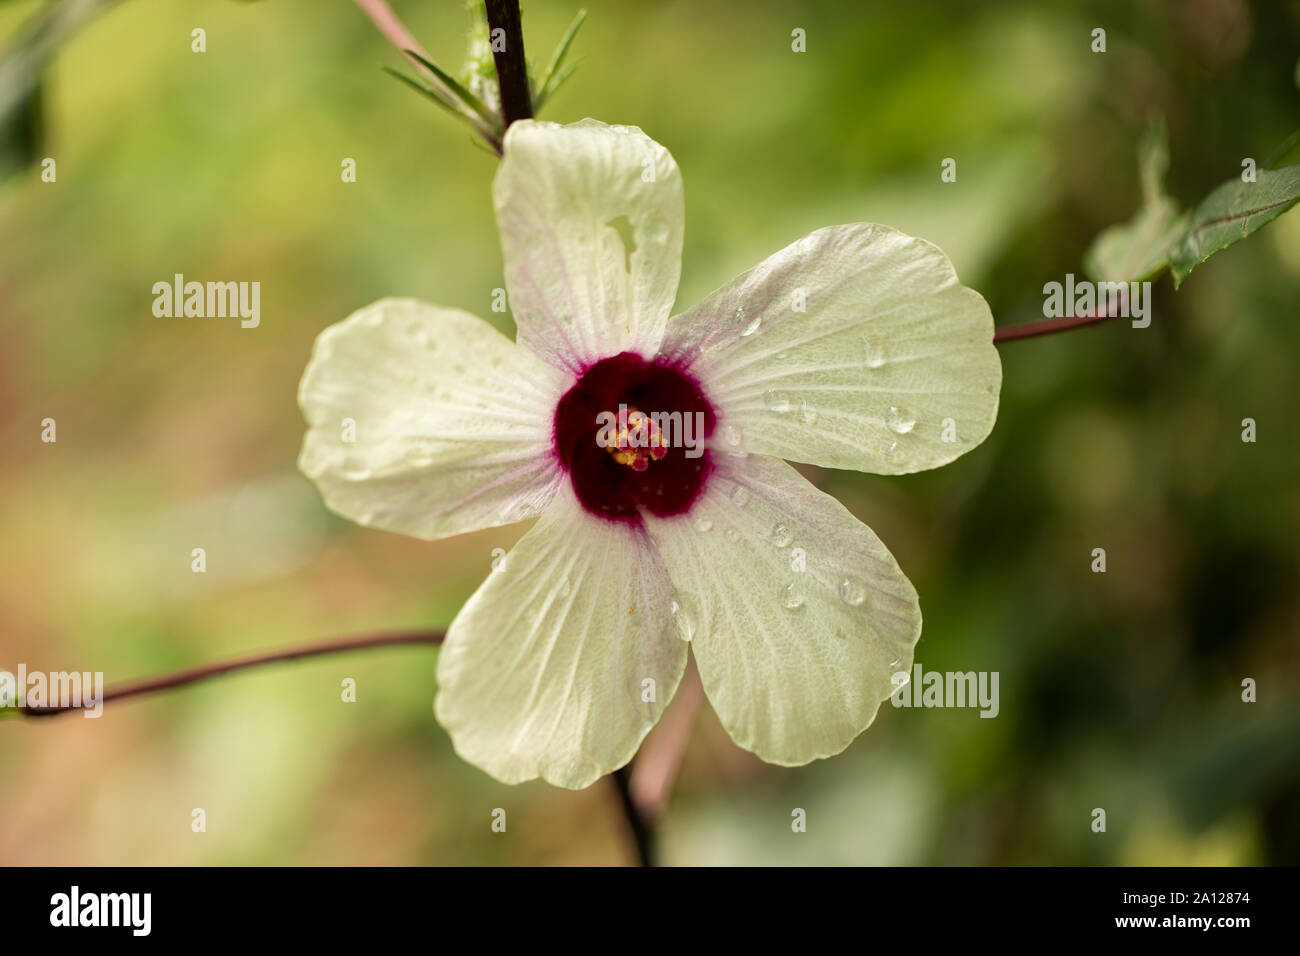 Roselle (Hibiscus sabdariffa), eine Blume aus der Malvenfamilie (Malvaceae), die in Afrika und Asien beheimatet ist und für Bastfasern, Kochen und Getränke verwendet wird. Stockfoto